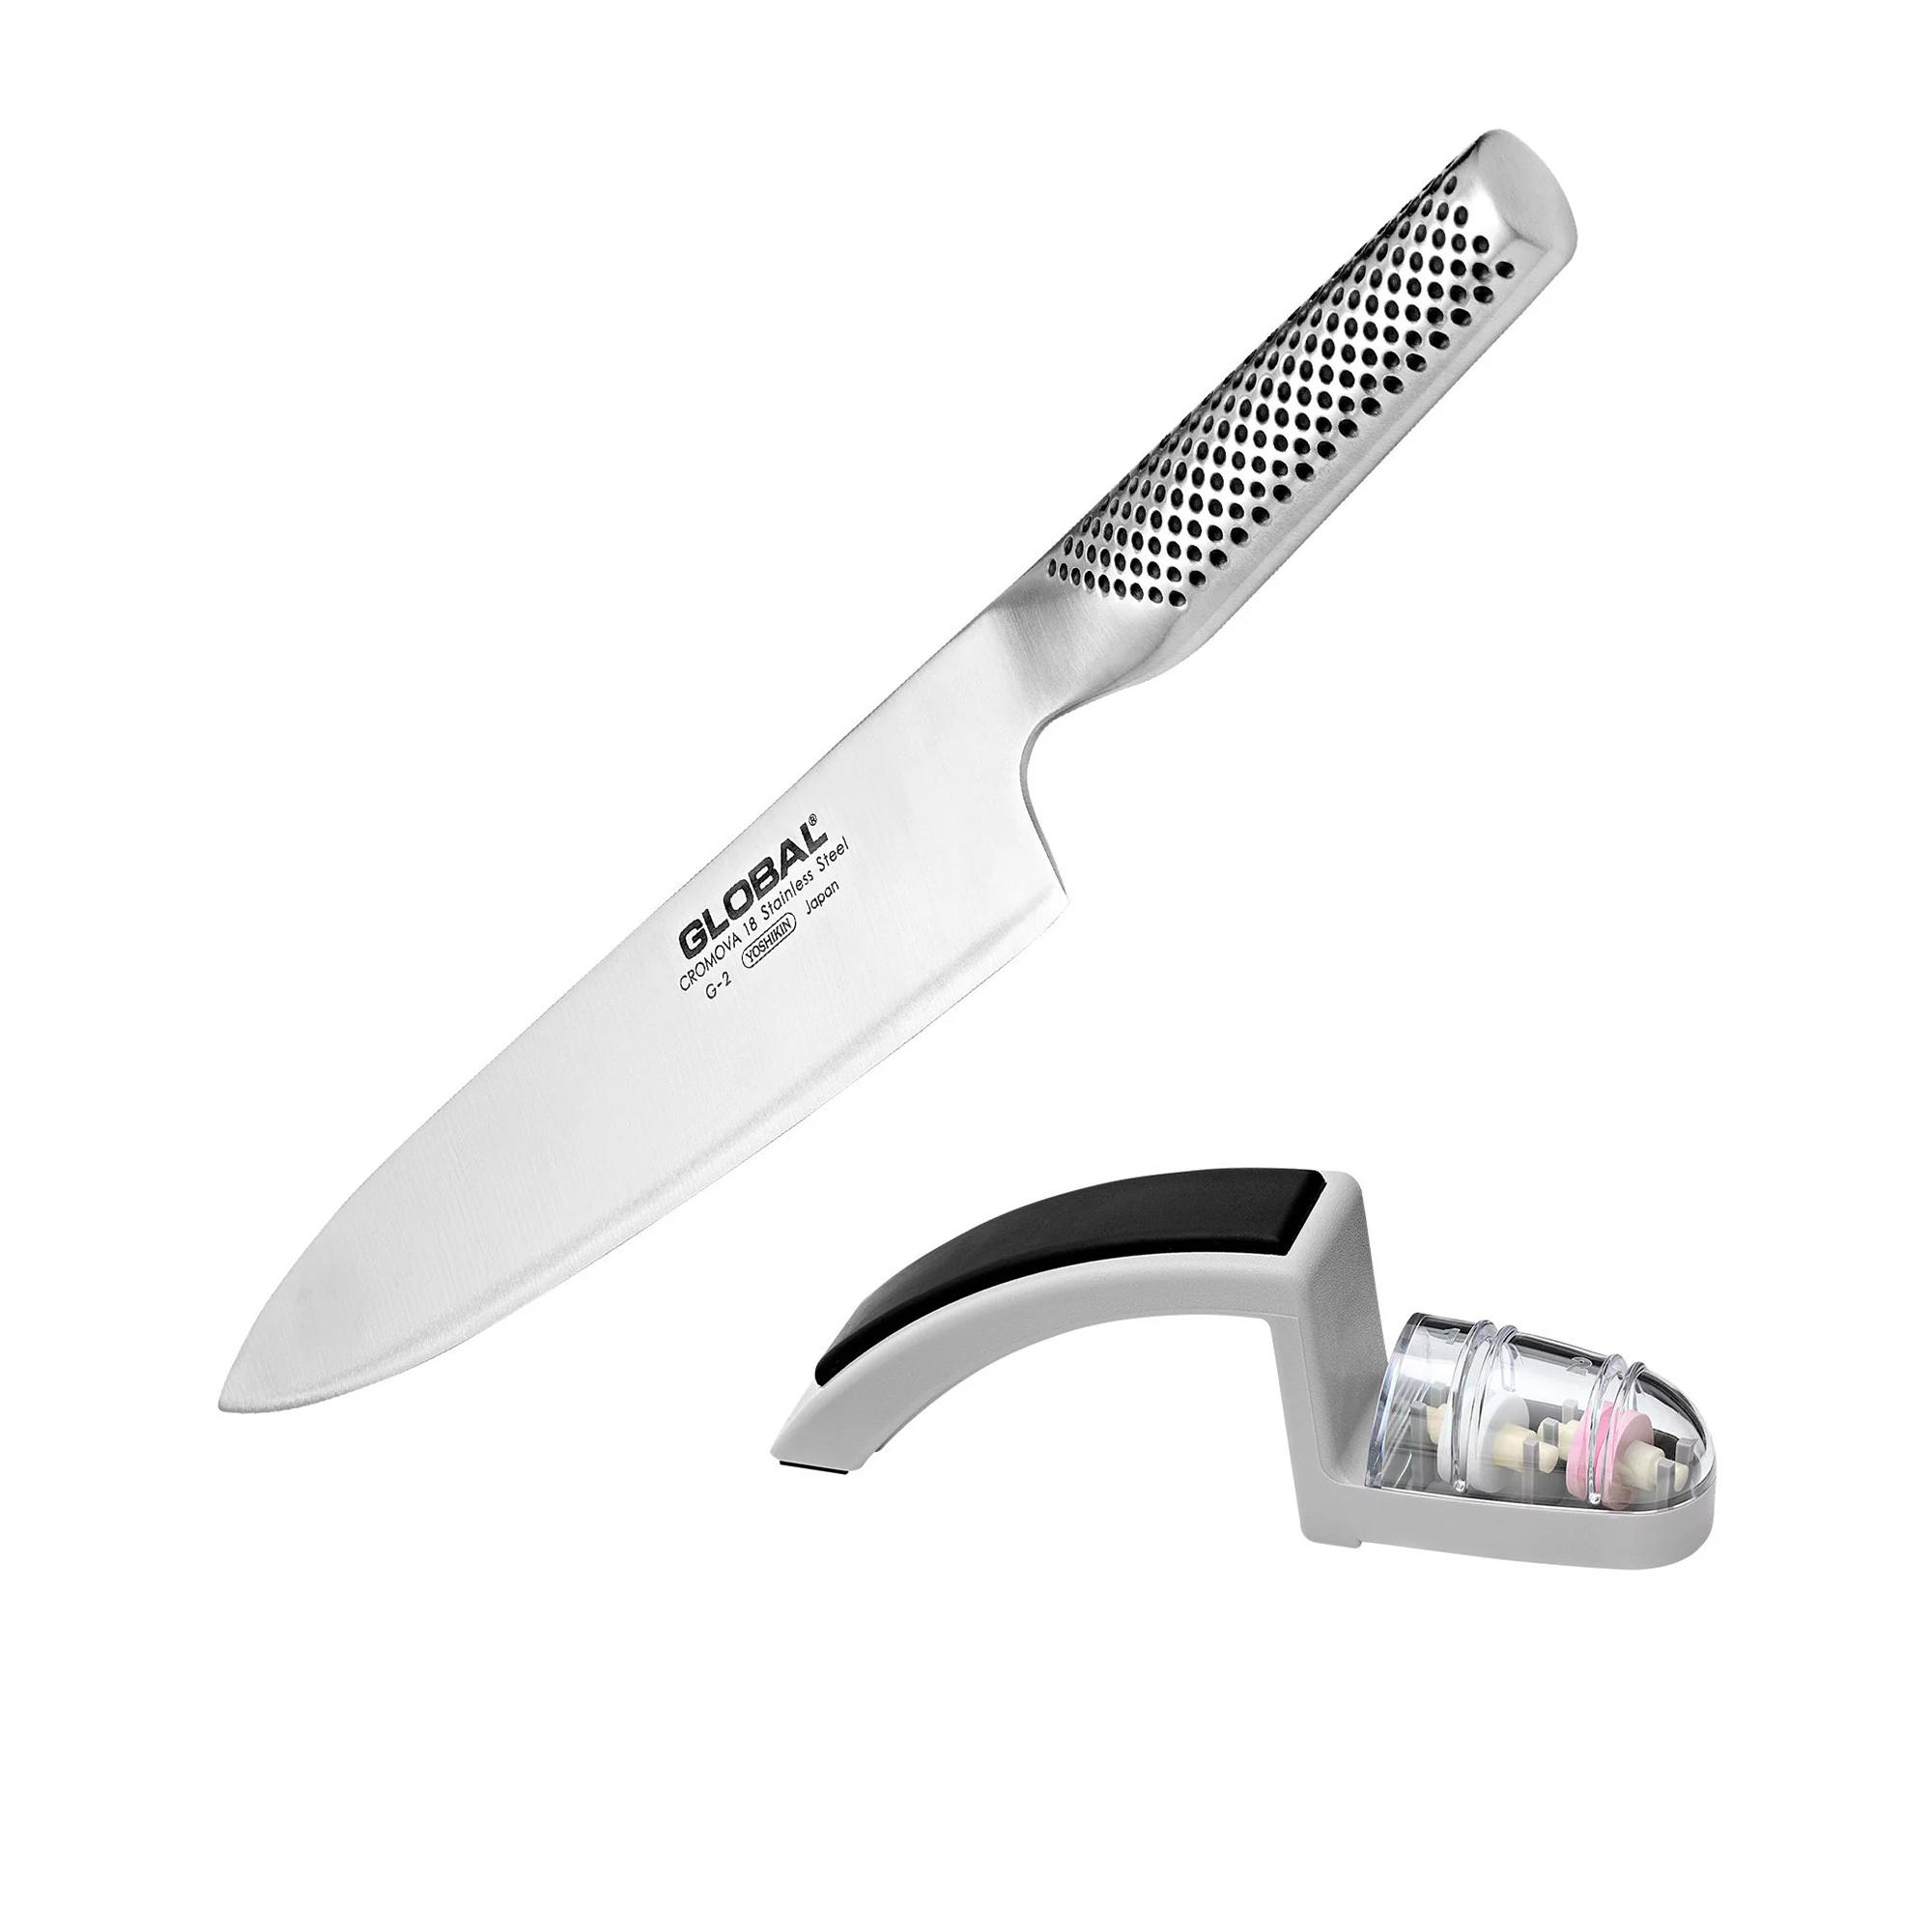 Global Cook's Knife & Sharpener Set Image 1